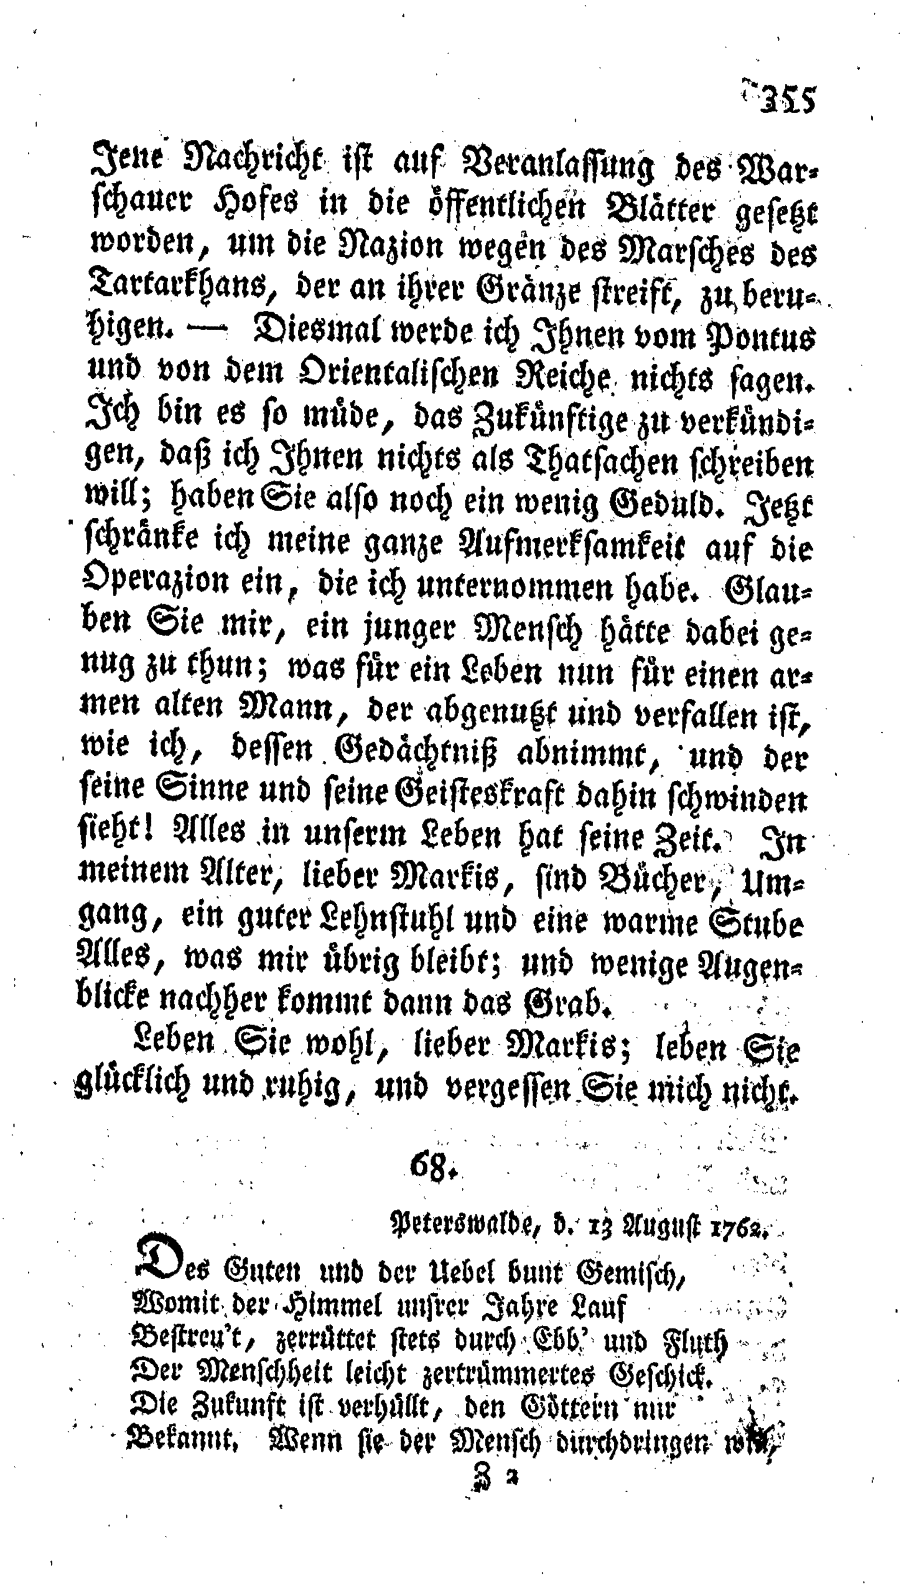 S. 355, Obj. 2